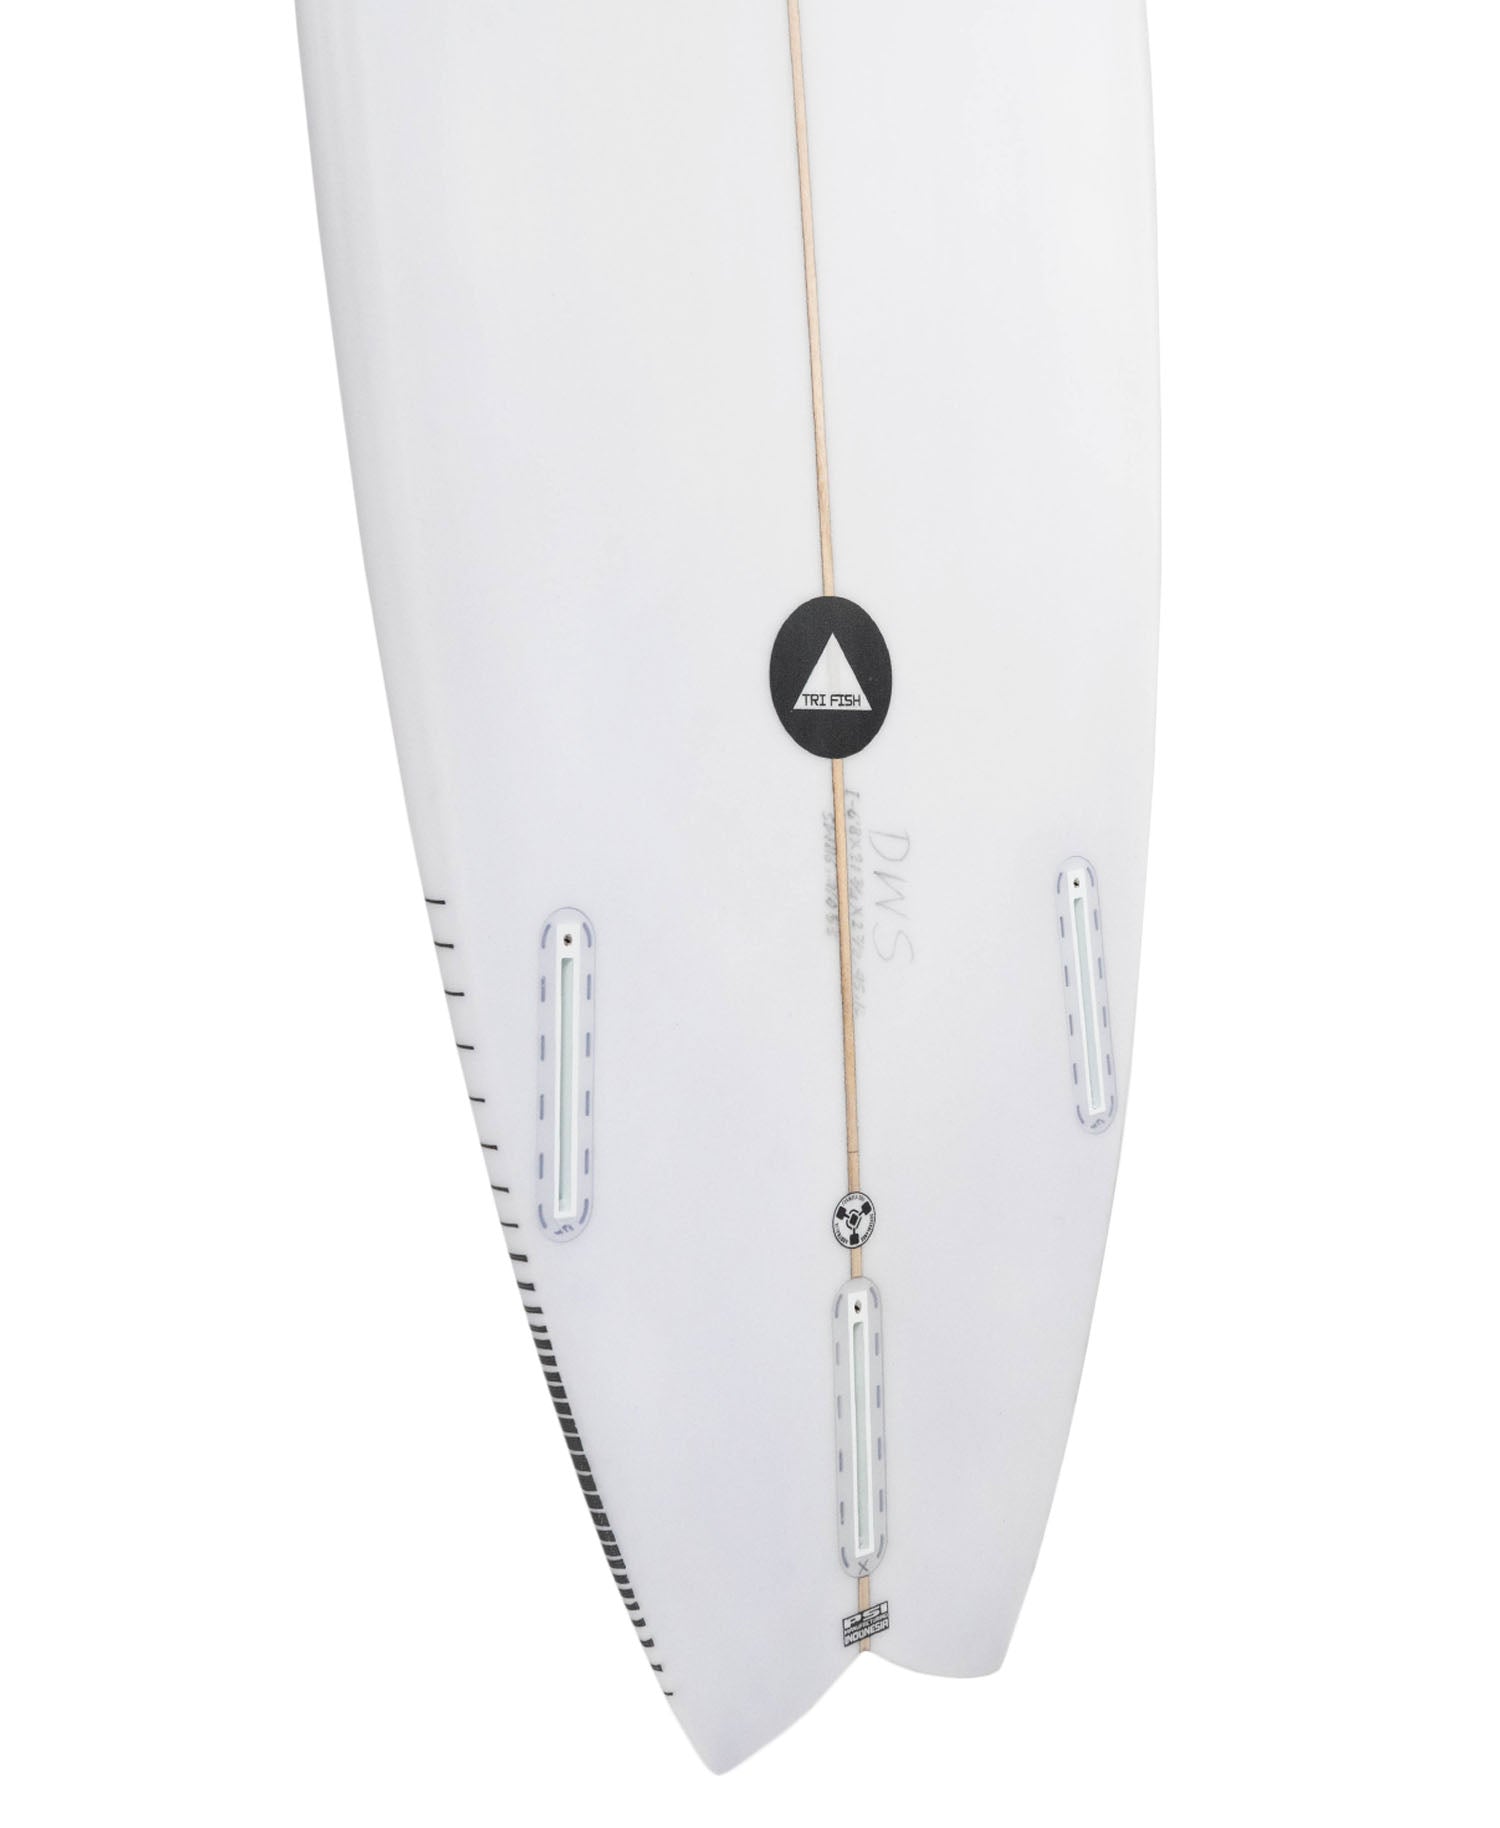 DWS 'TRI FISH' SWALLOW SURFBOARD